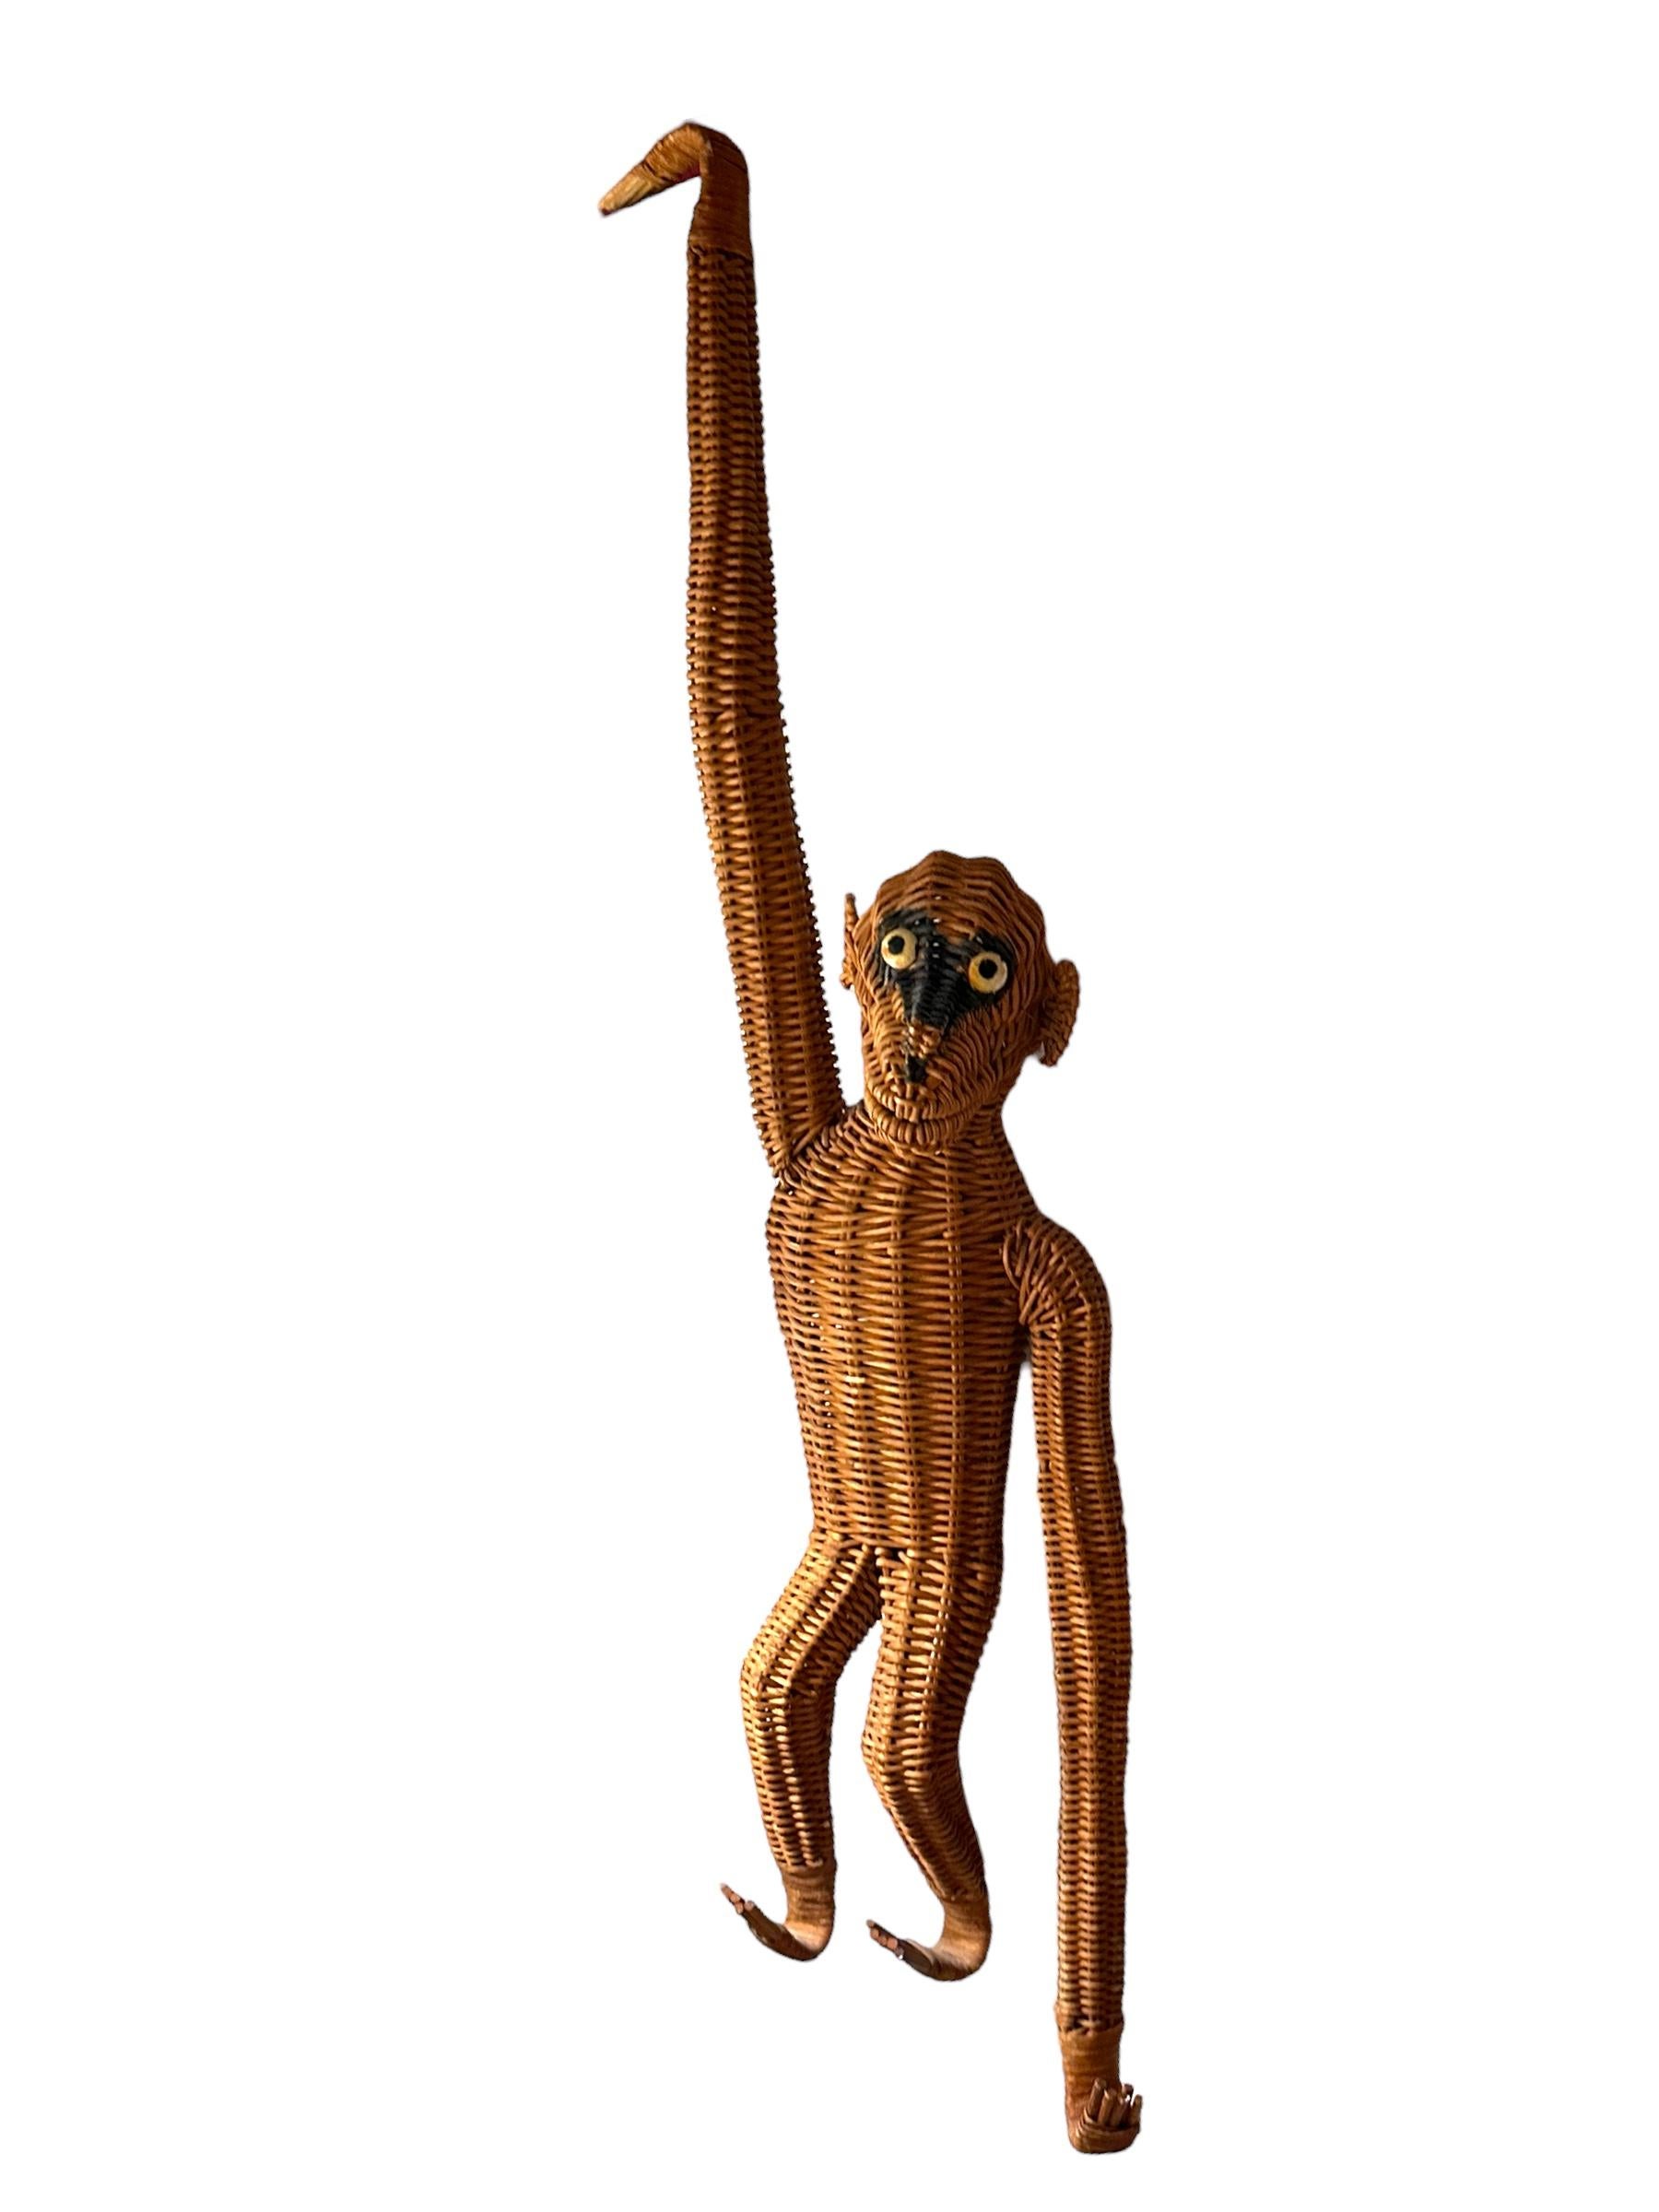 Angeboten wird eine 1970er Vintage Boho Figurative Animalia Wicker Rattan Affe hängende Figur im Stil von Mario Lopez Torres. Diese Französisch Animalia Vintage 1960er-1970er Jahren geflochtene Weide Tier ist in wunderbarer Vintage-Zustand, aber es